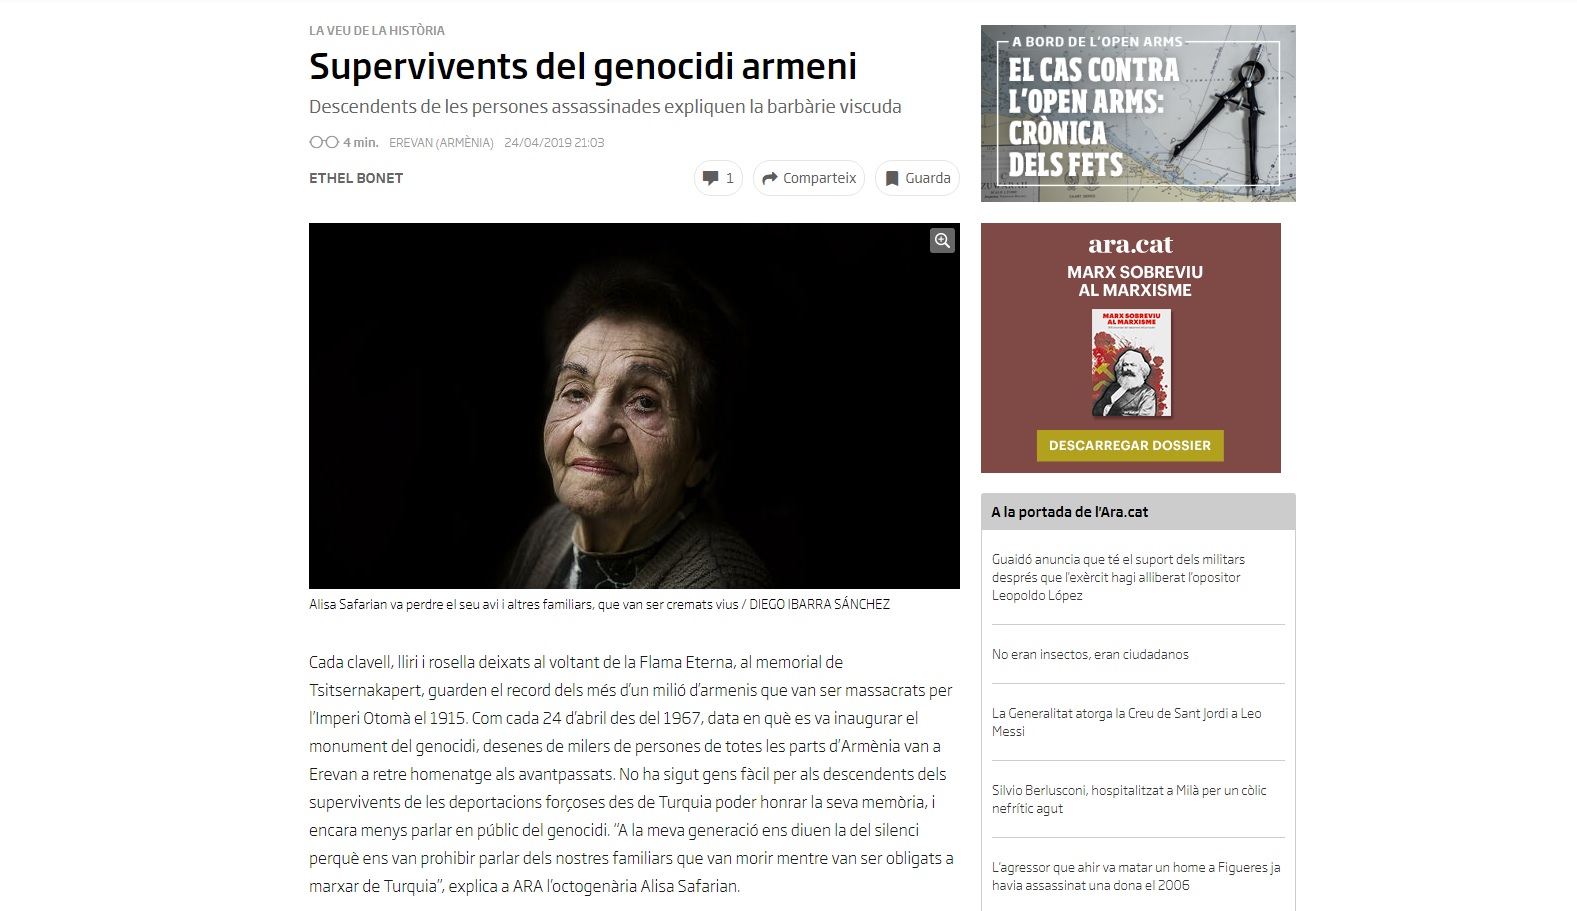 Испанская журналистка Этель Бонэ опубликовала на каталонском языке статью о Геноциде армян